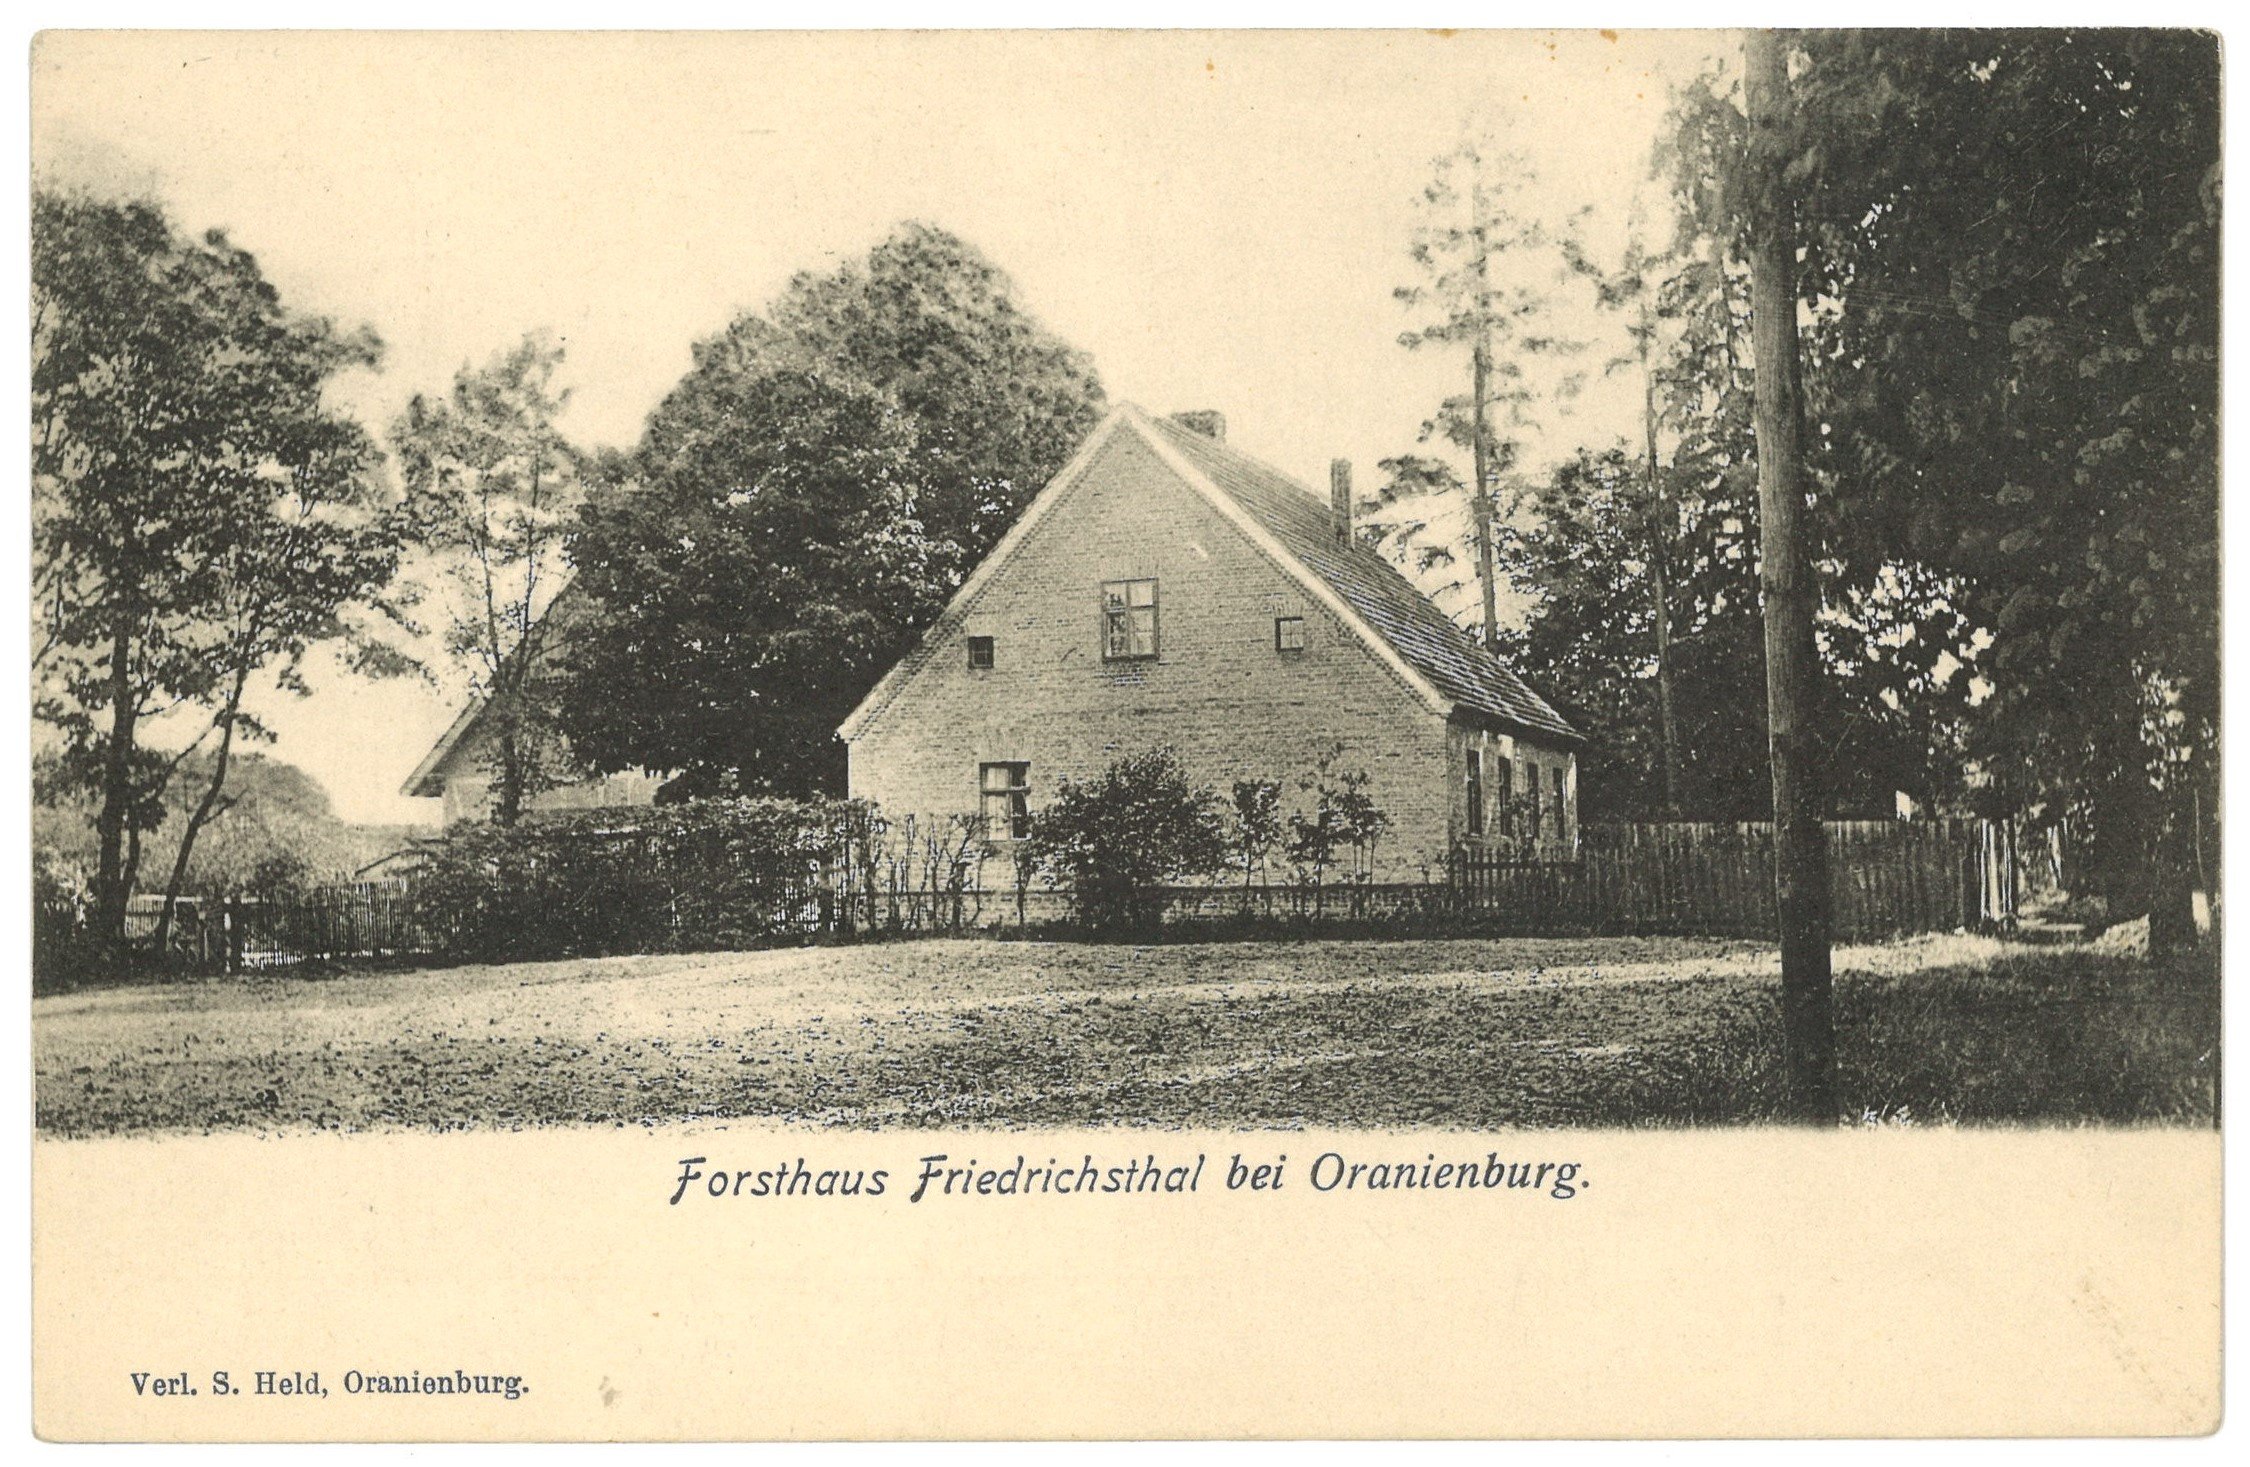 Friedrichsthal bei Oranienburg: Forsthaus (Landesgeschichtliche Vereinigung für die Mark Brandenburg e.V. CC BY)